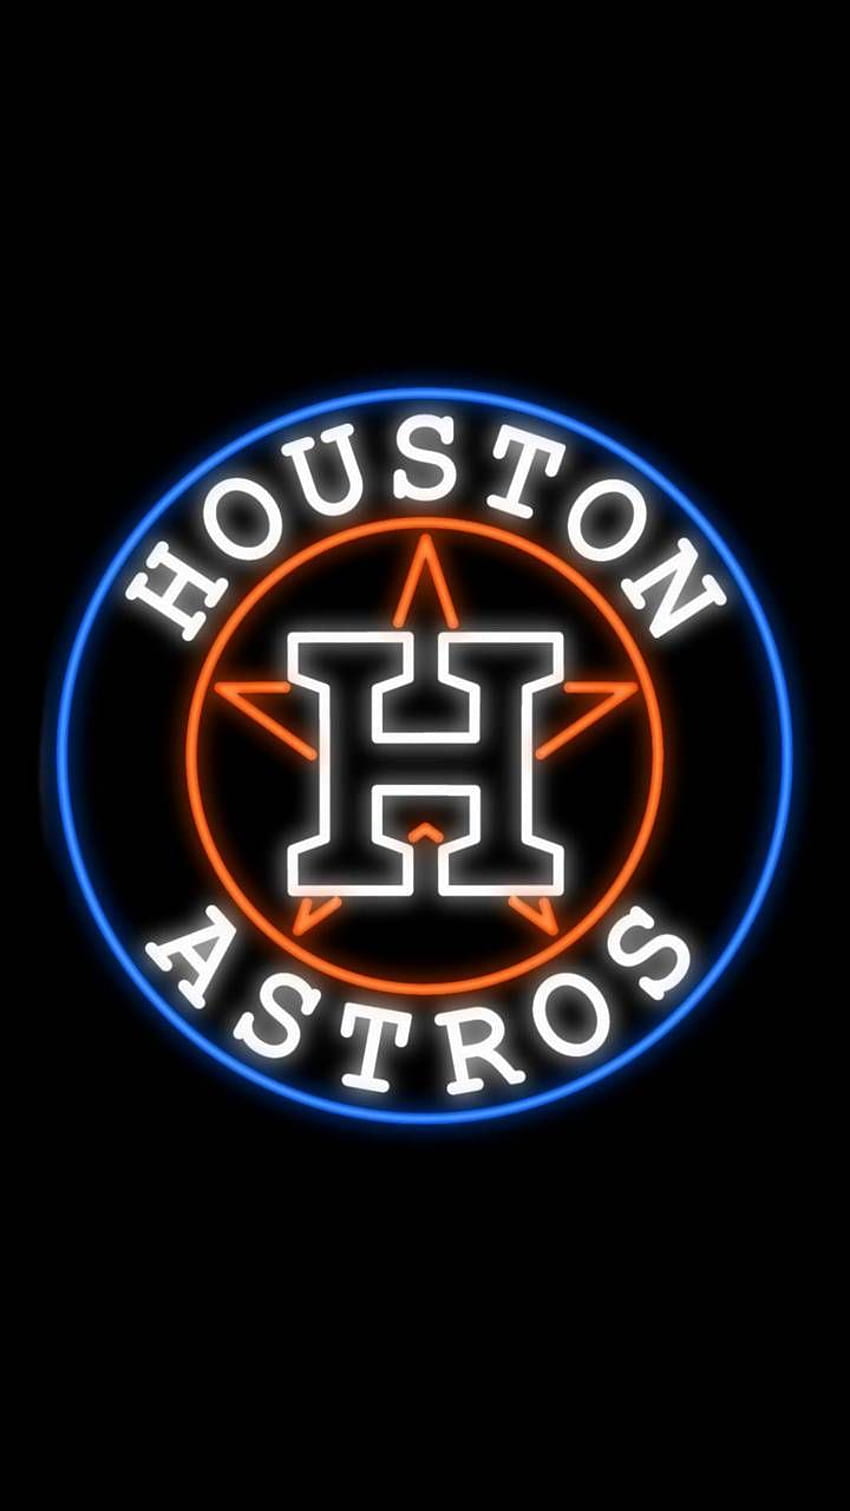 Astros Wallpapers Discover more Astros Astros Logo Baseball Houston  Astros MLB wallpaper httpswwwixpap  Mlb wallpaper Houston astros  Baseball wallpaper